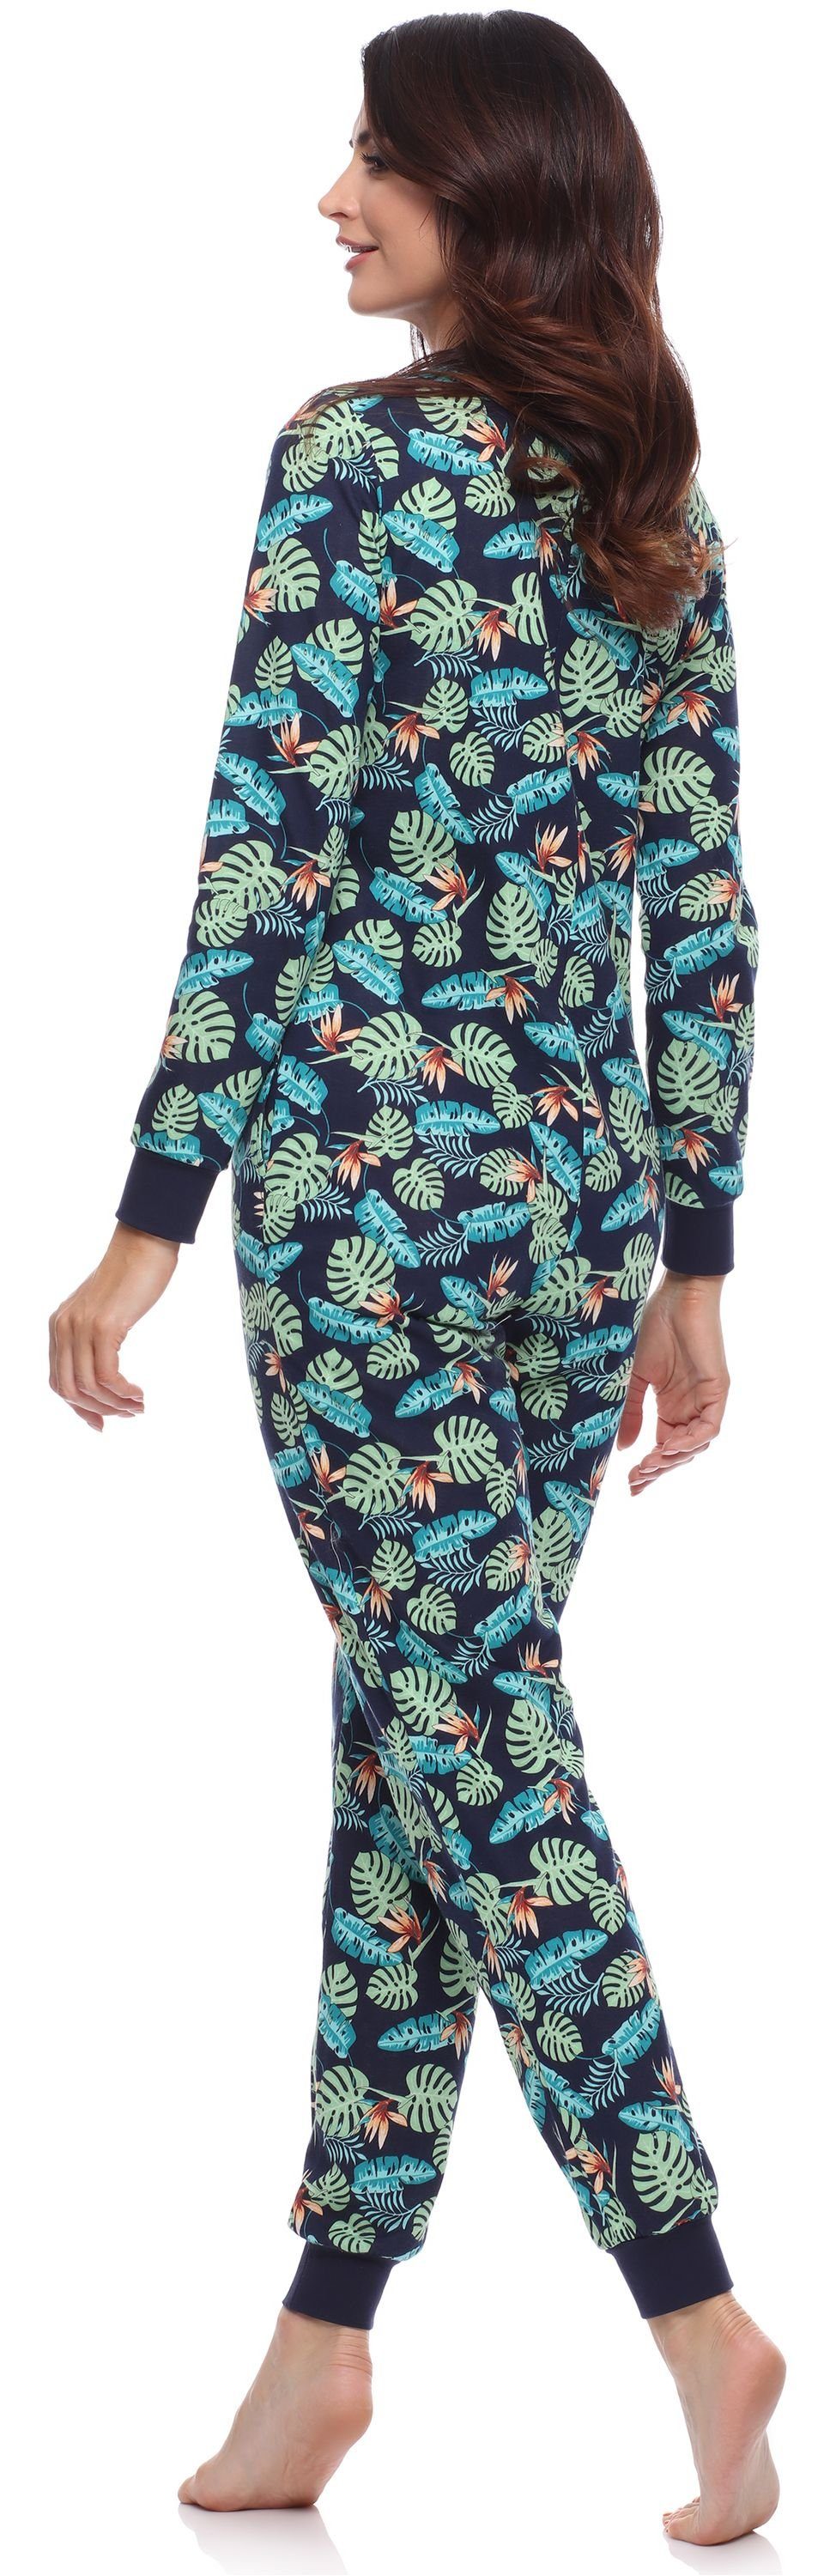 Schlafoverall Merry Schlafanzug Damen Schlafanzug Strampelanzug MS10-187 Marineblau/Blätter Style